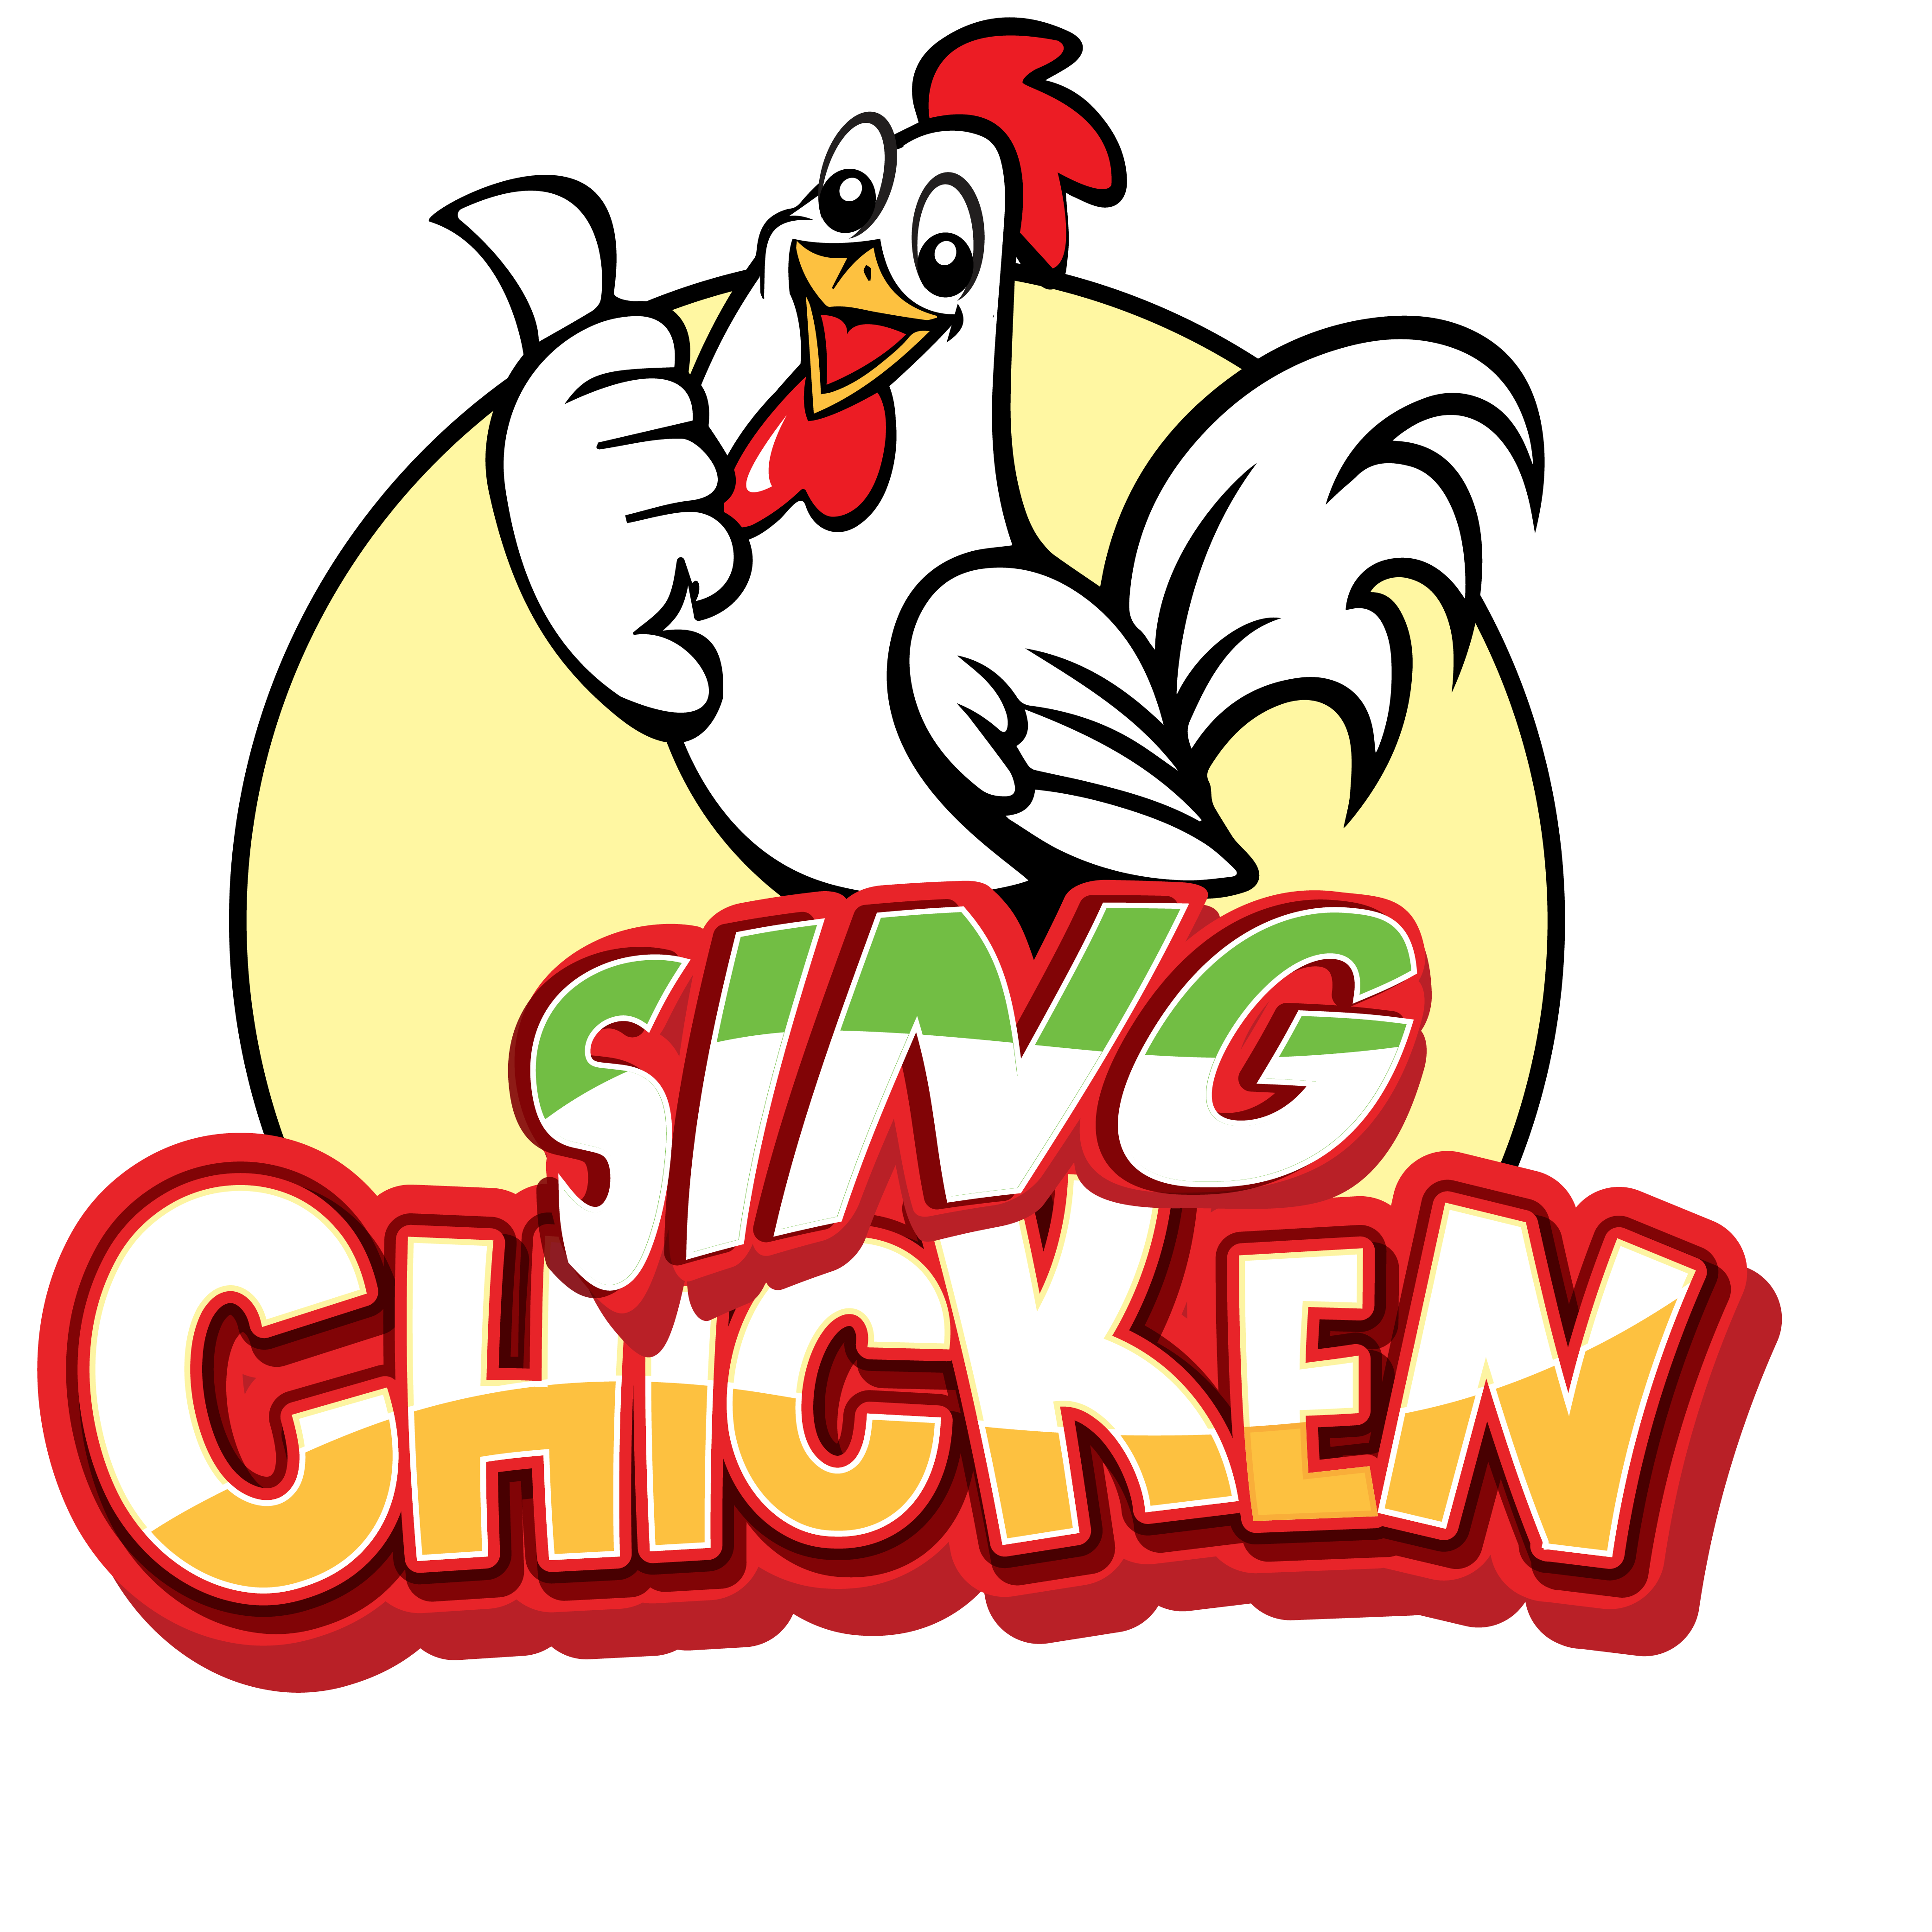 Cơm gà Singapore